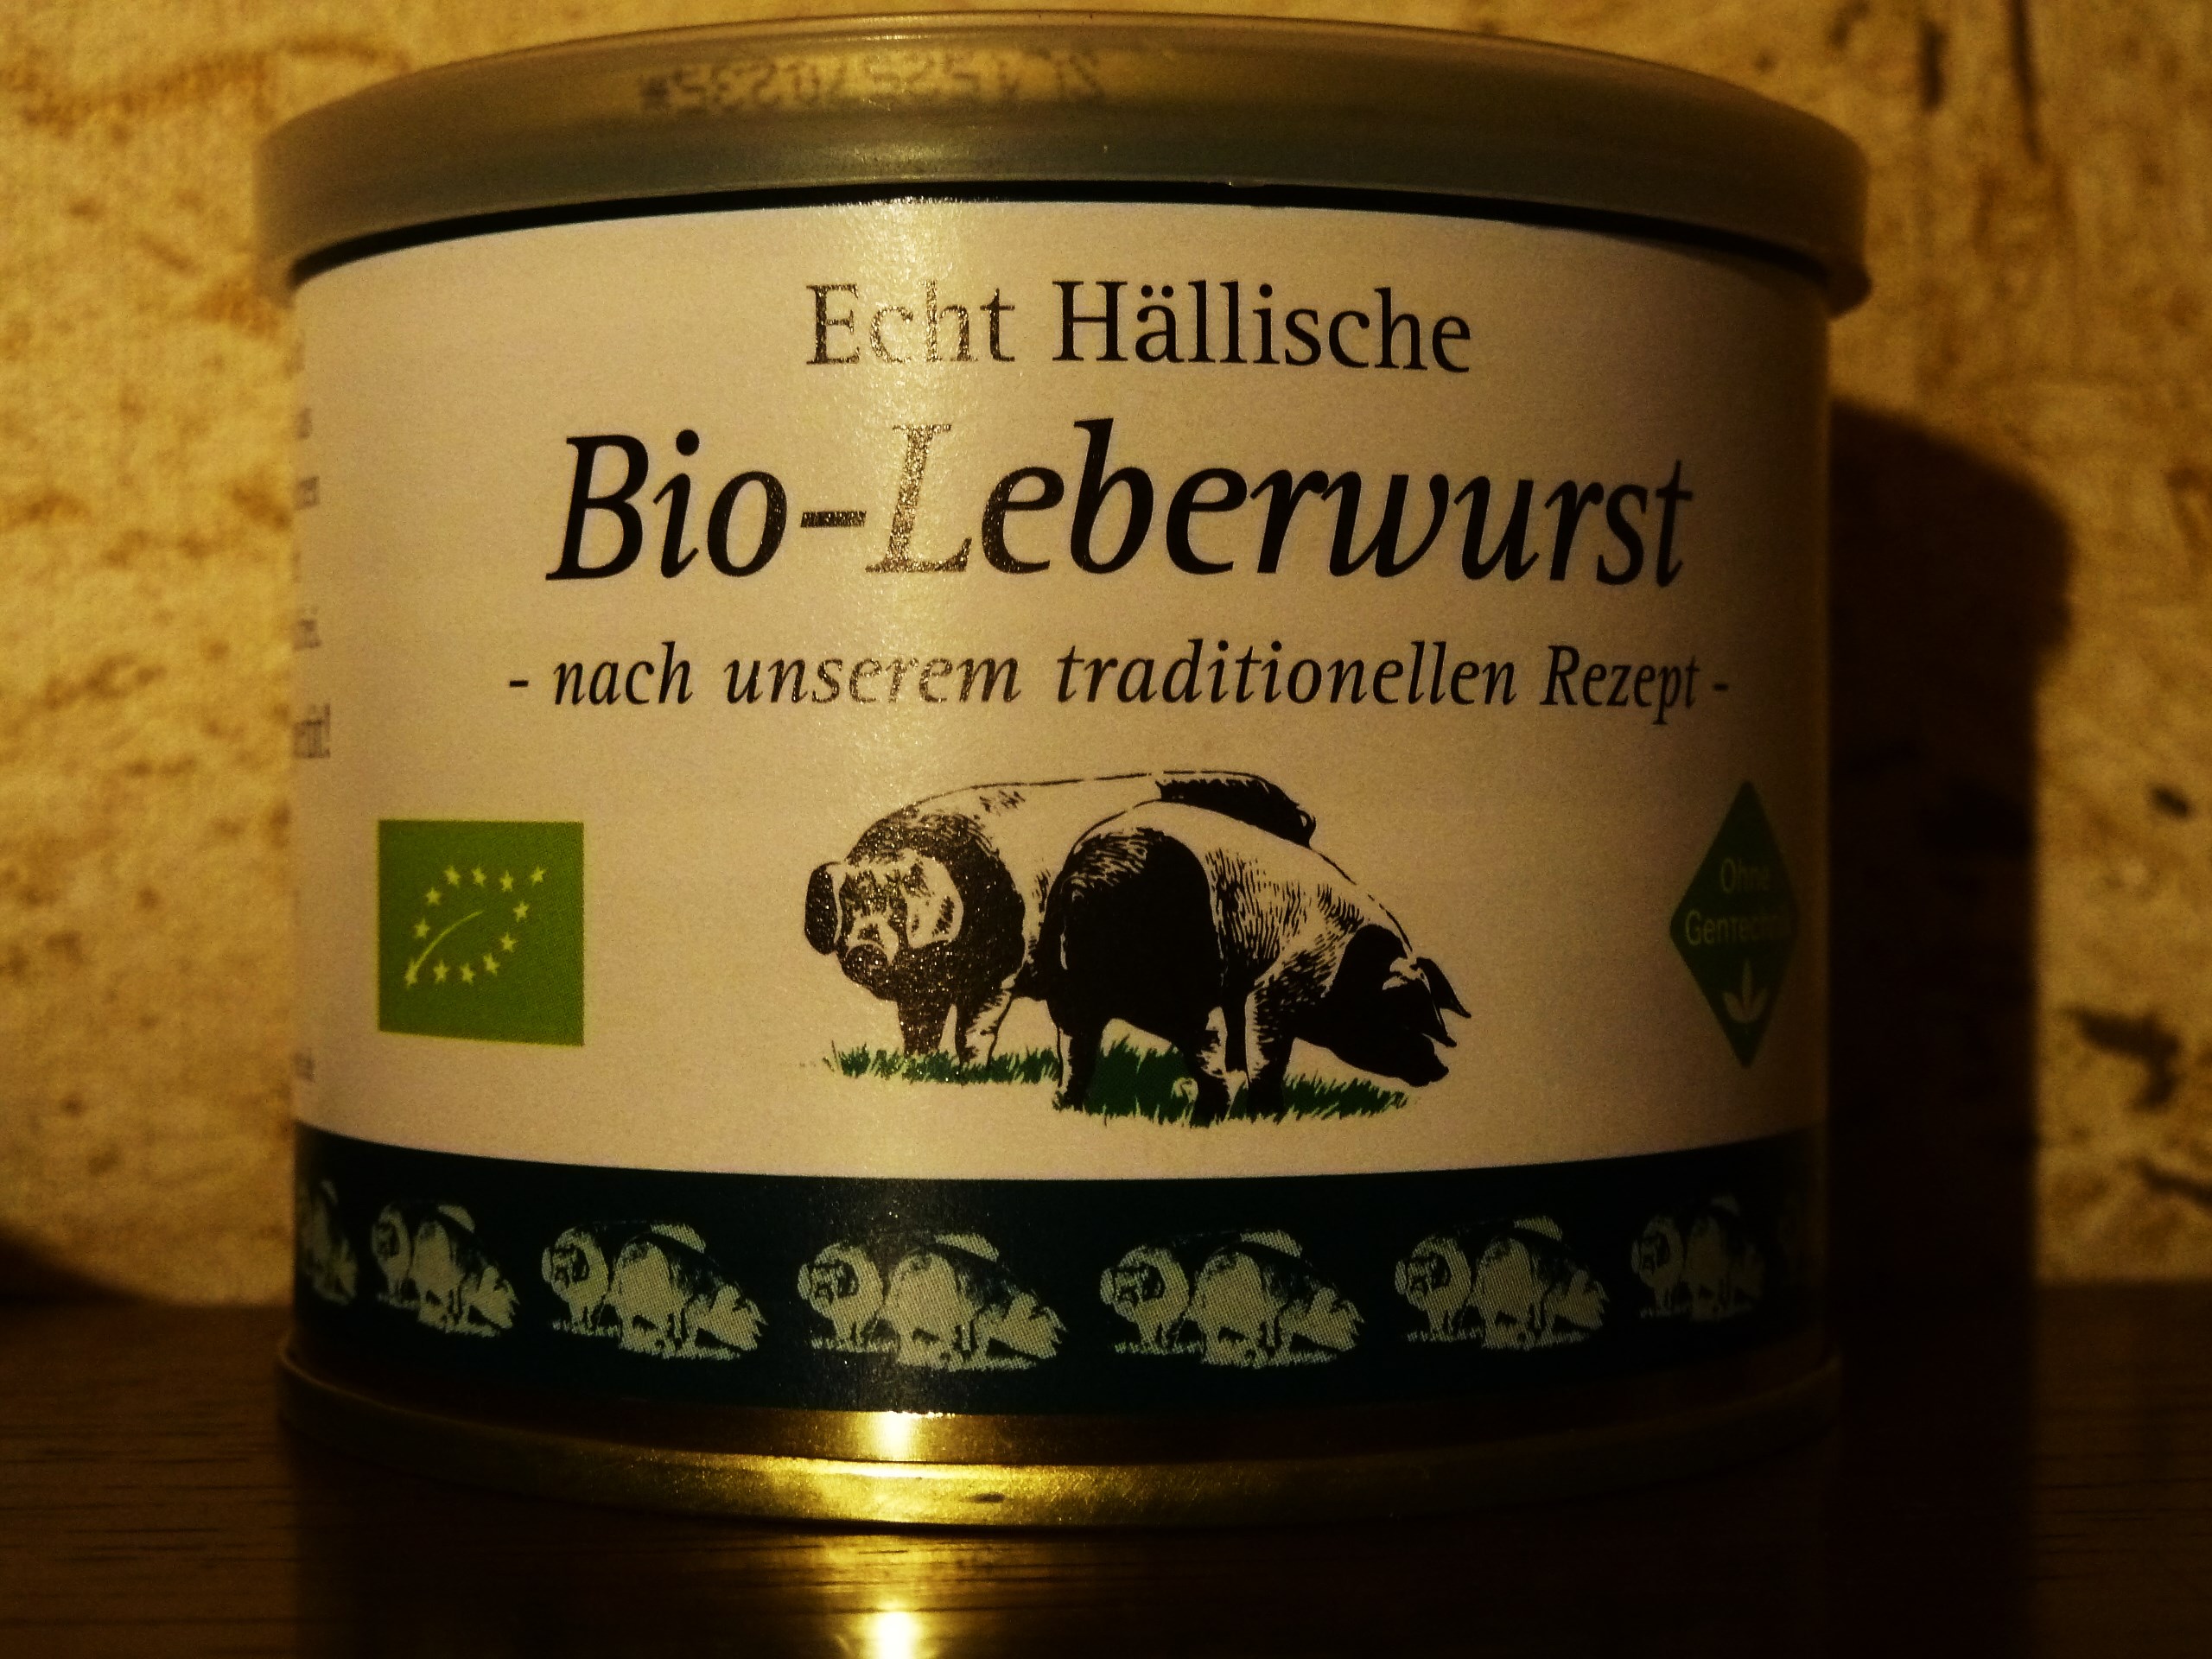 Bäuerliche Erzeugergemeinschaft Schwäbisch Hall
Wurstkonserven